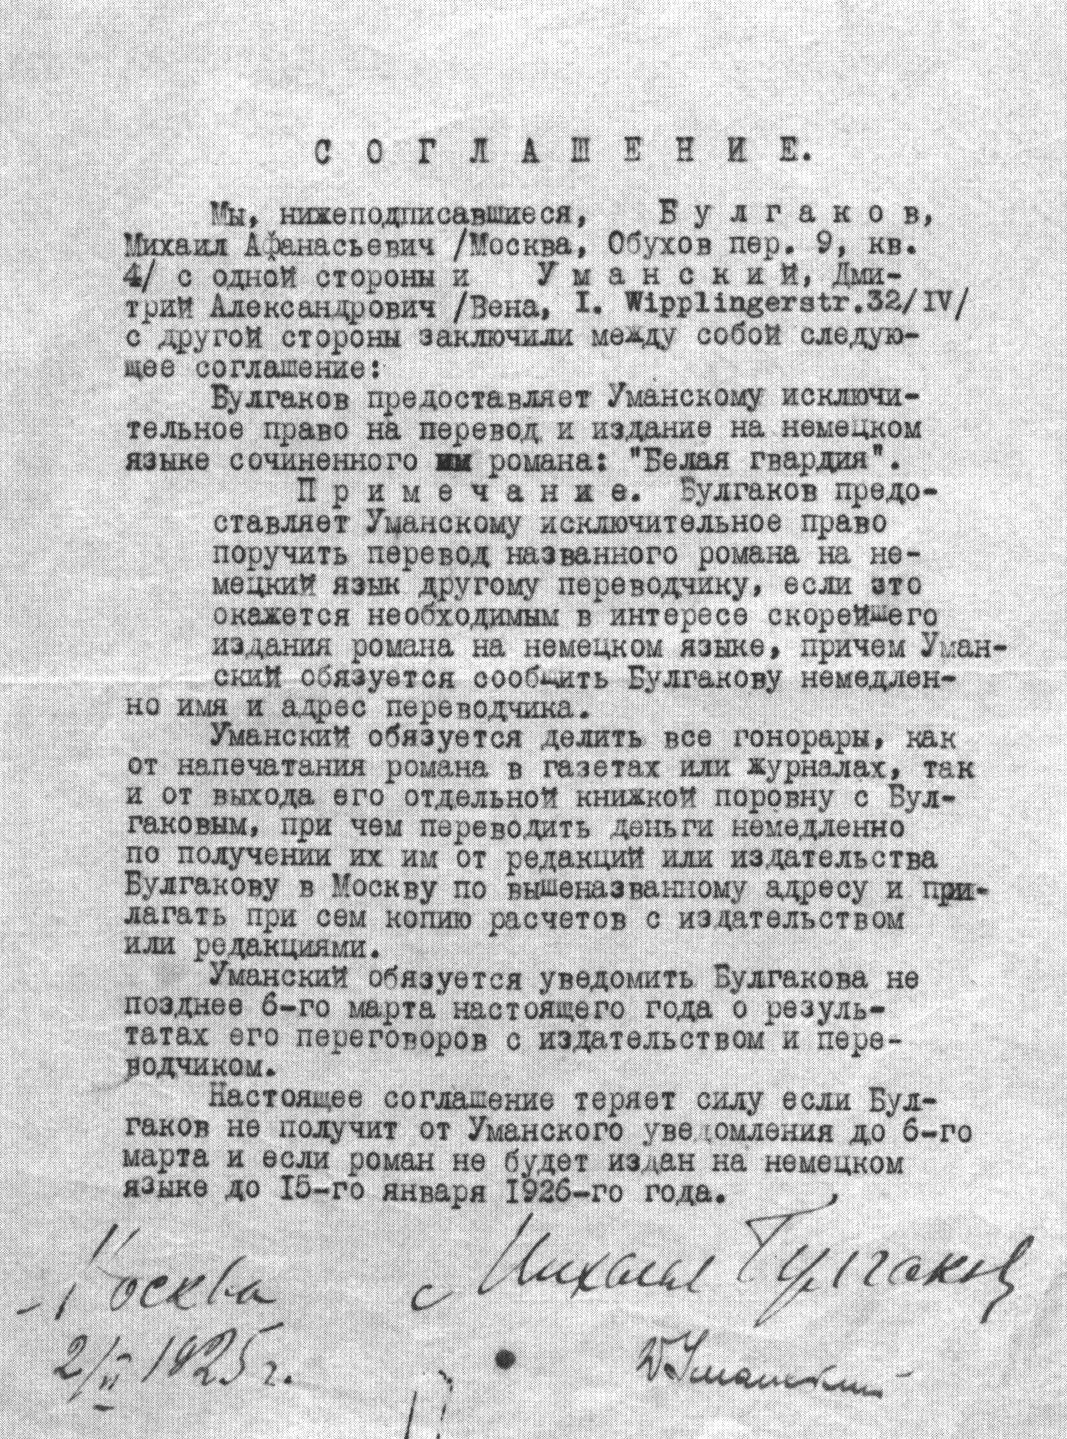 Соглашение М.А. Булгакова с Д.А. Уманским о переводе на немецкий язык романа «Белая гвардия». 2 февраля 1925 г. 